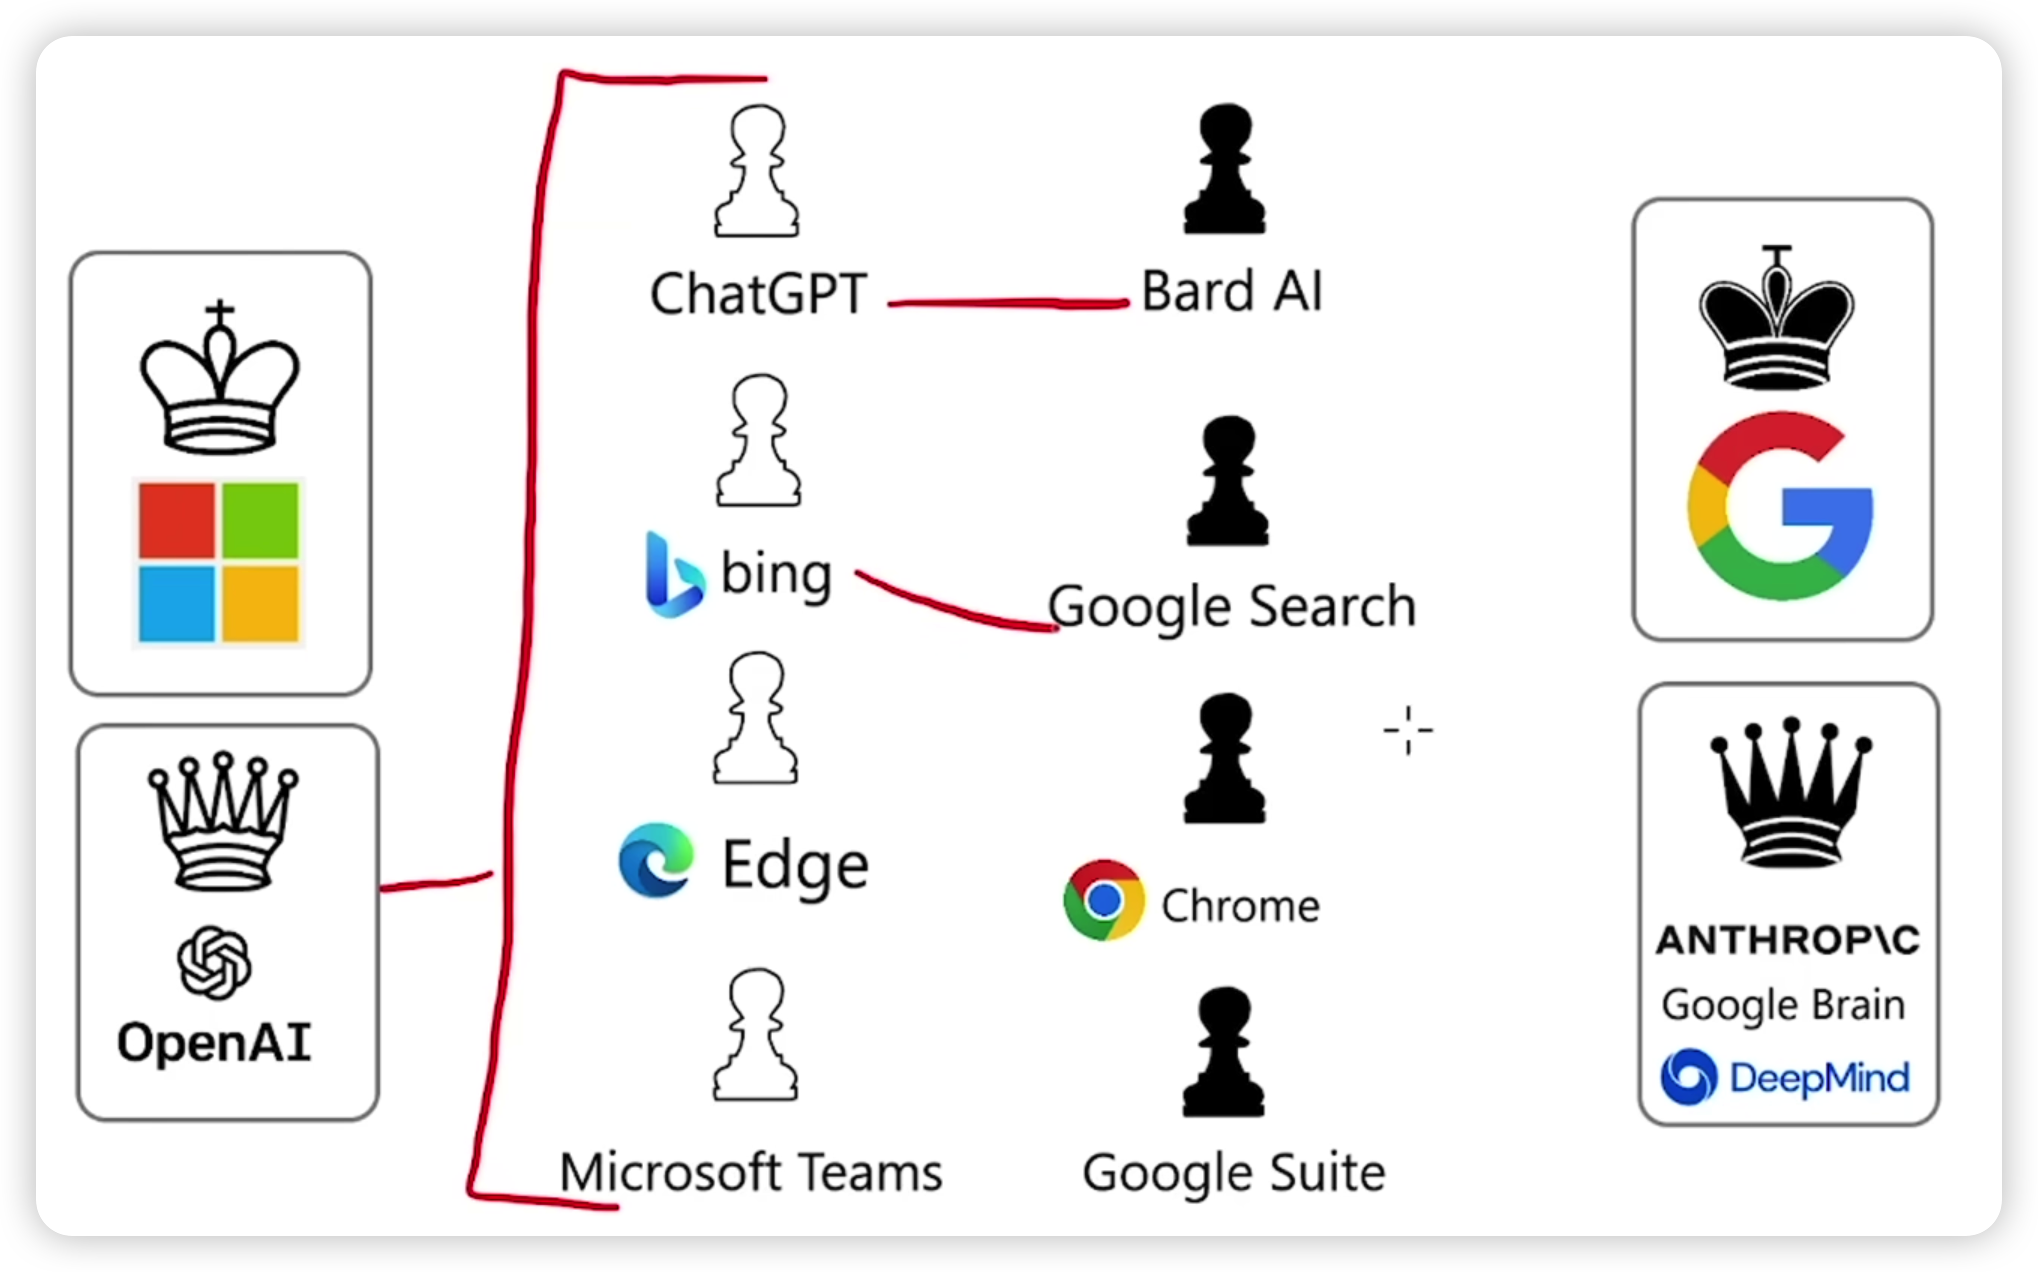 微软和谷歌之间的人工智能之争